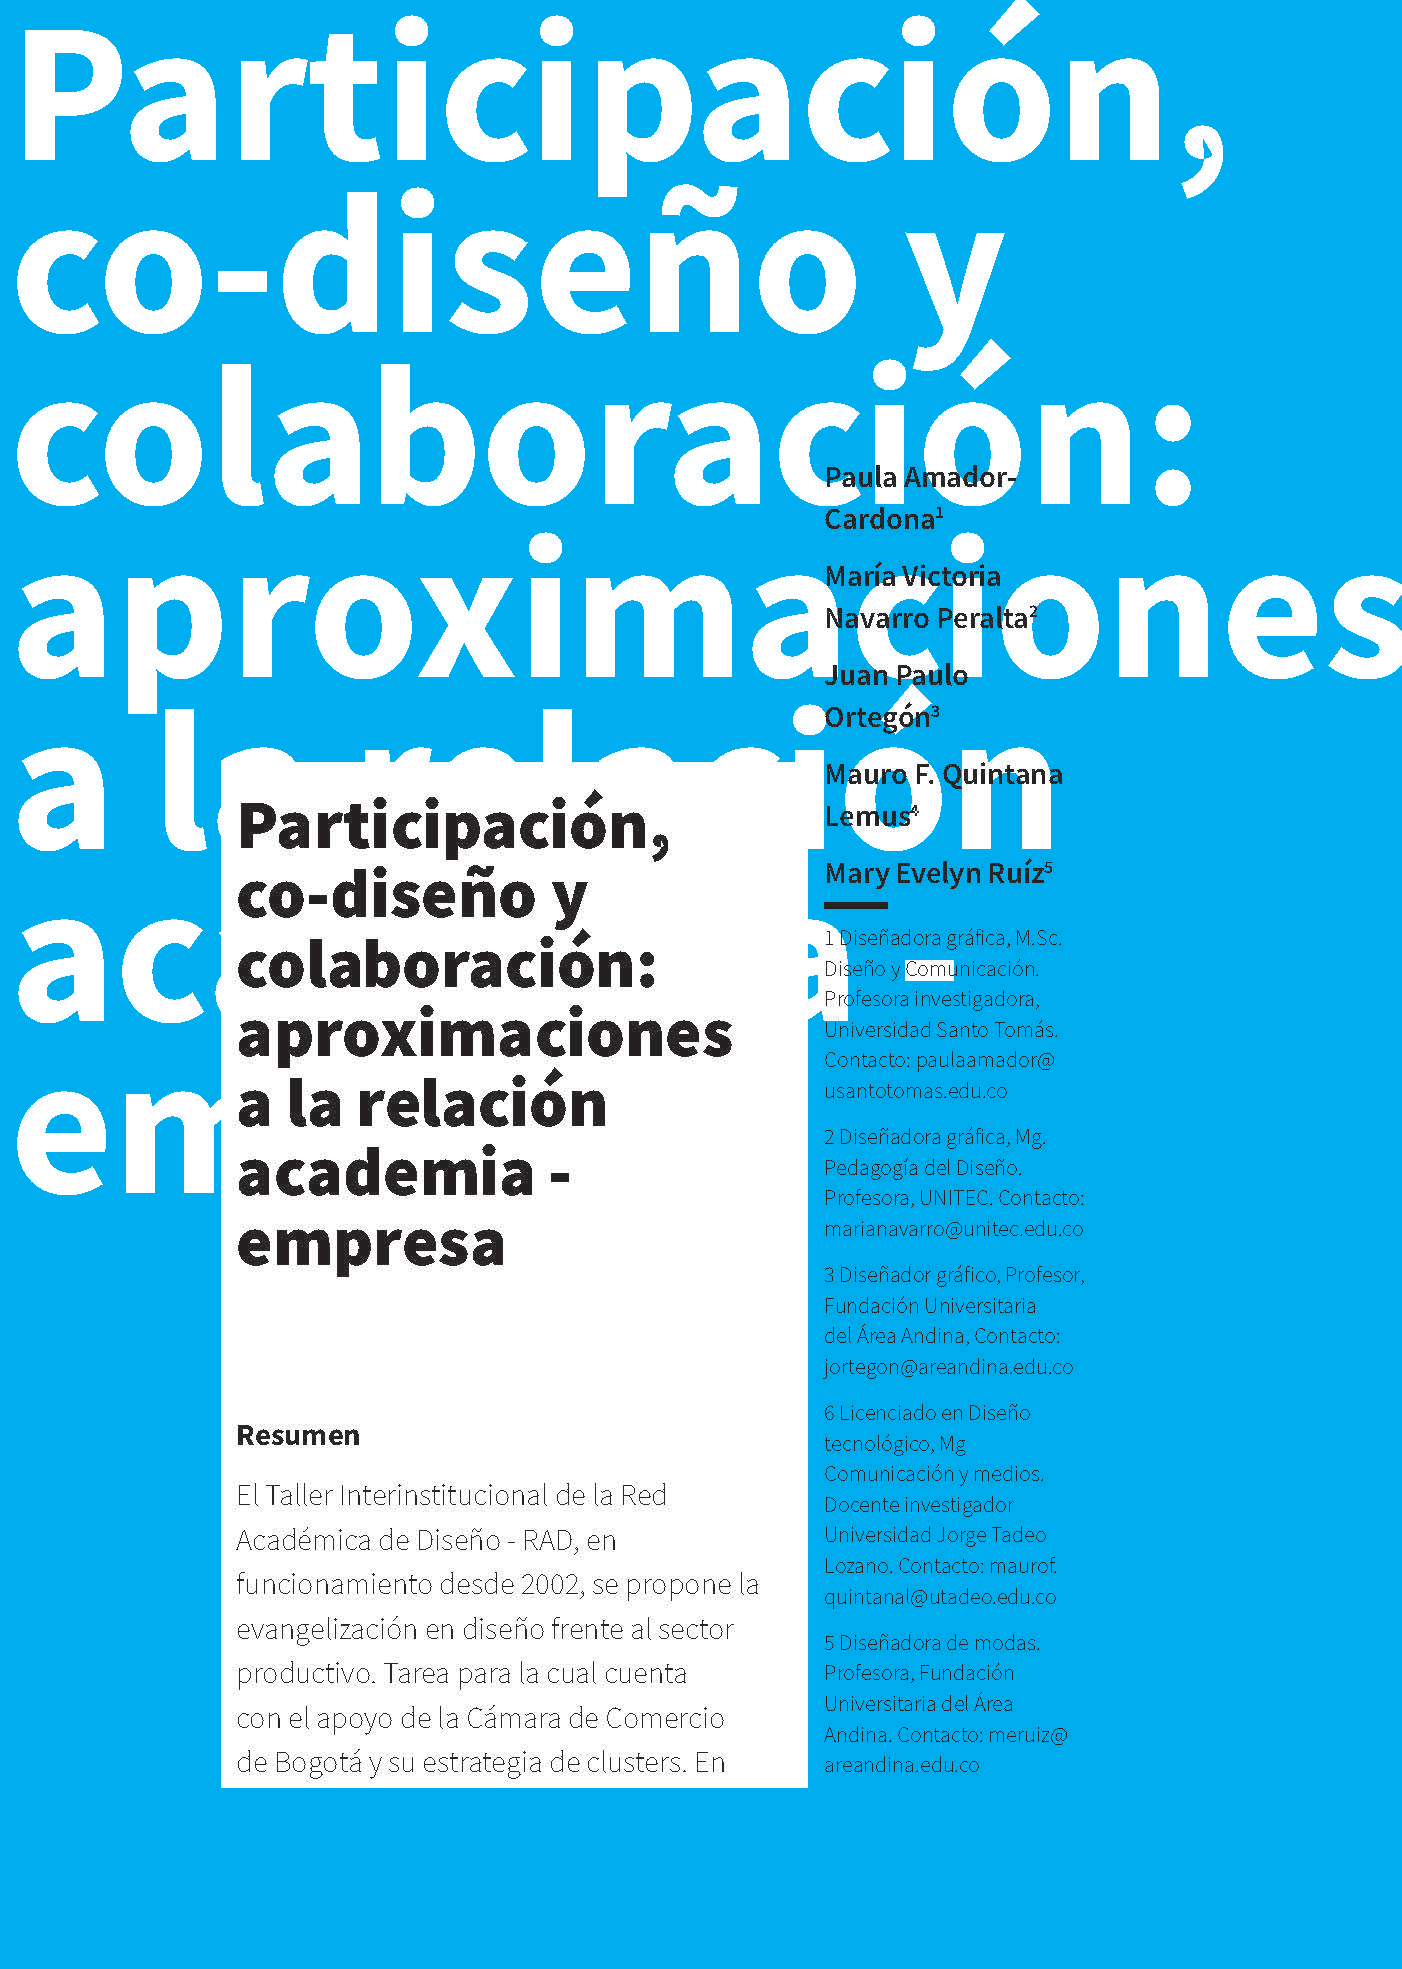 Participación, co-diseño y colaboración